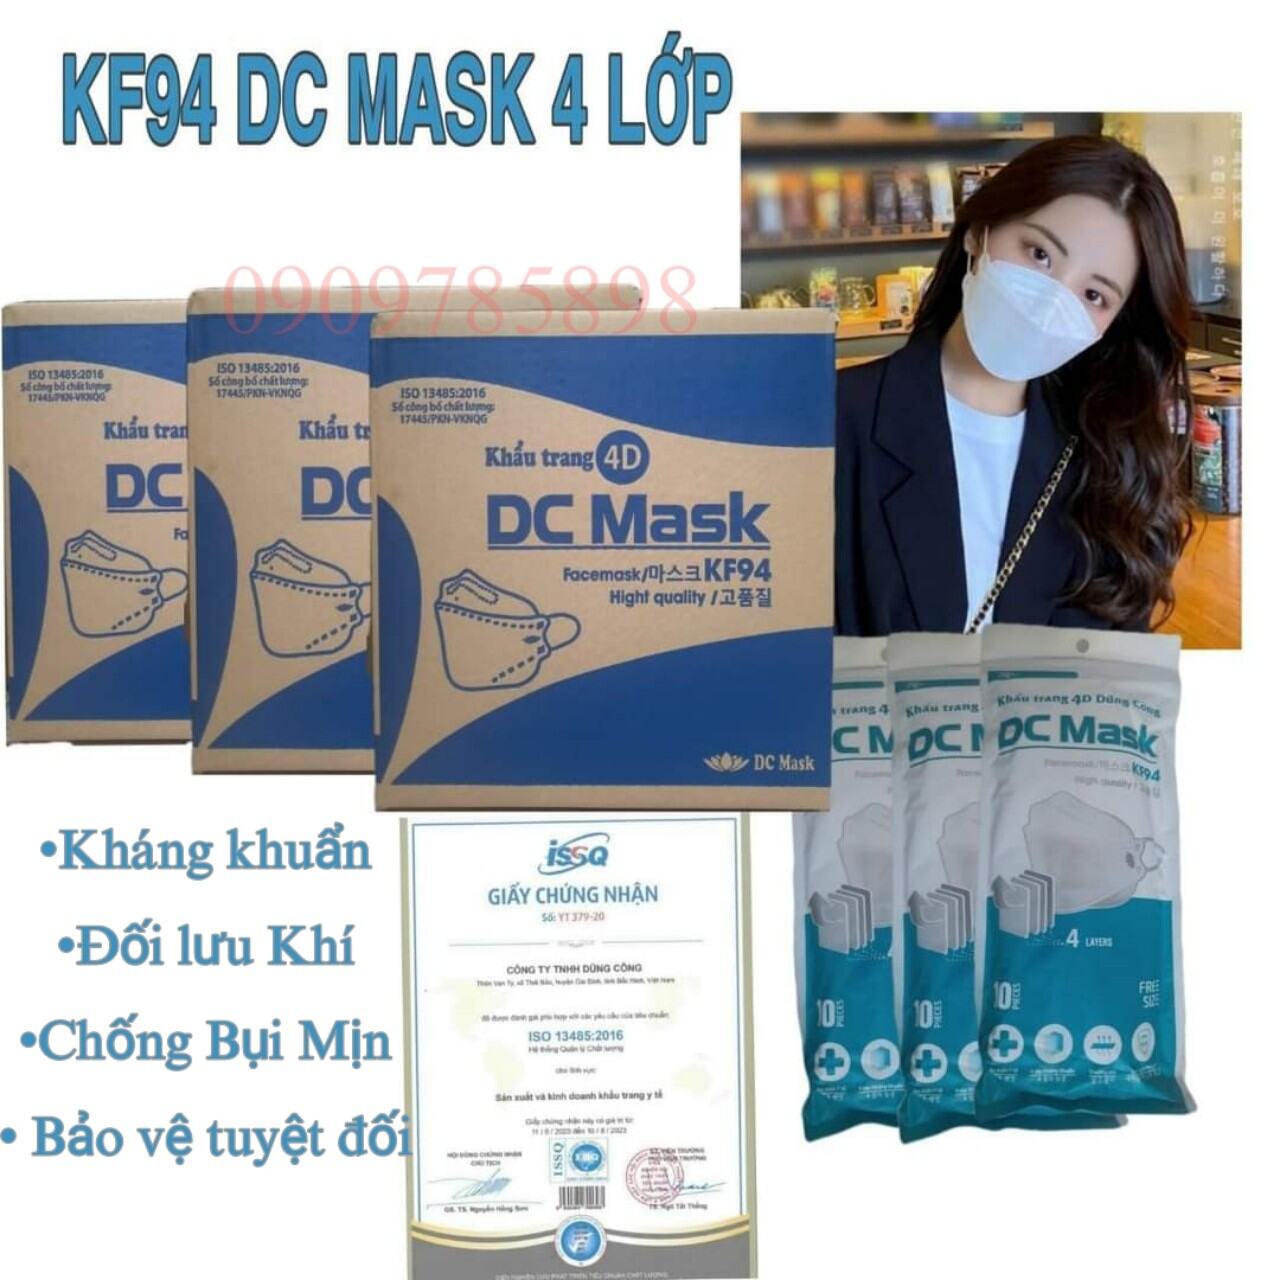 {Thùng 300 cái} Khẩu trang KF94 DC Mask, 4 lớp kháng khuẩn, có các màu xanh, trắng, hồng, xám, đen( có chứng từ Y Tế)